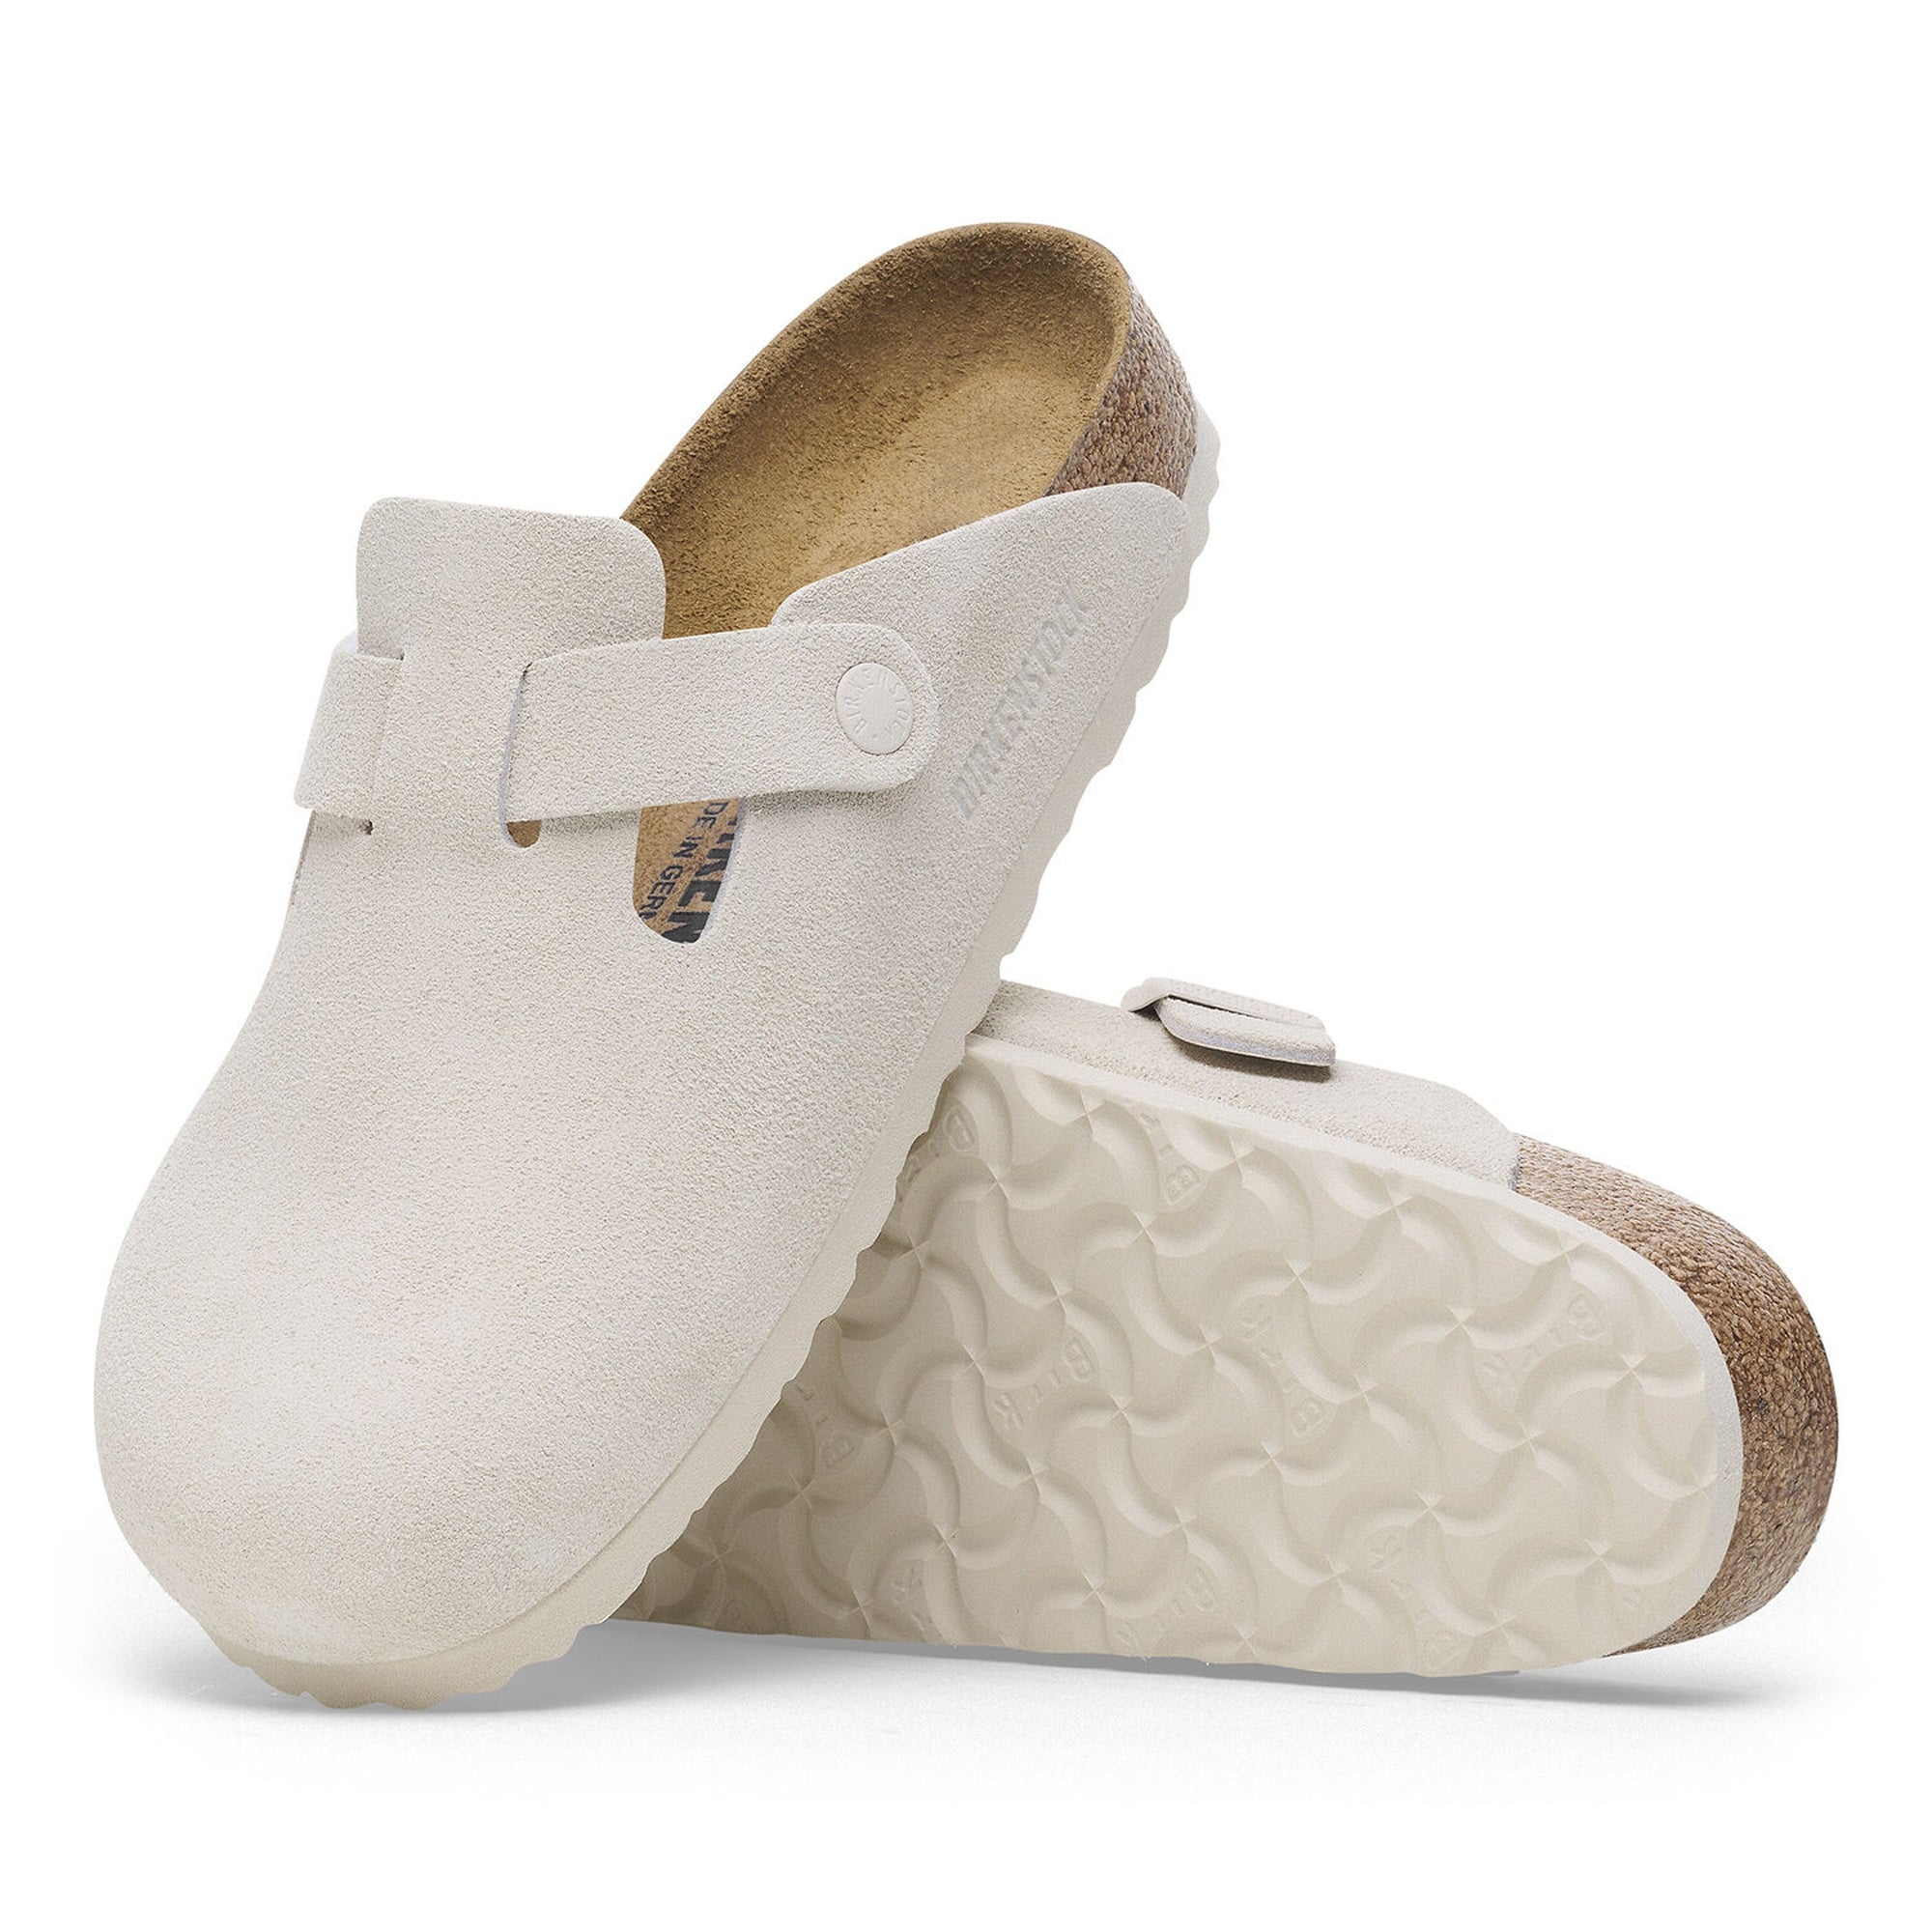 Birkenstock Boston Sandals - Antique White Suede